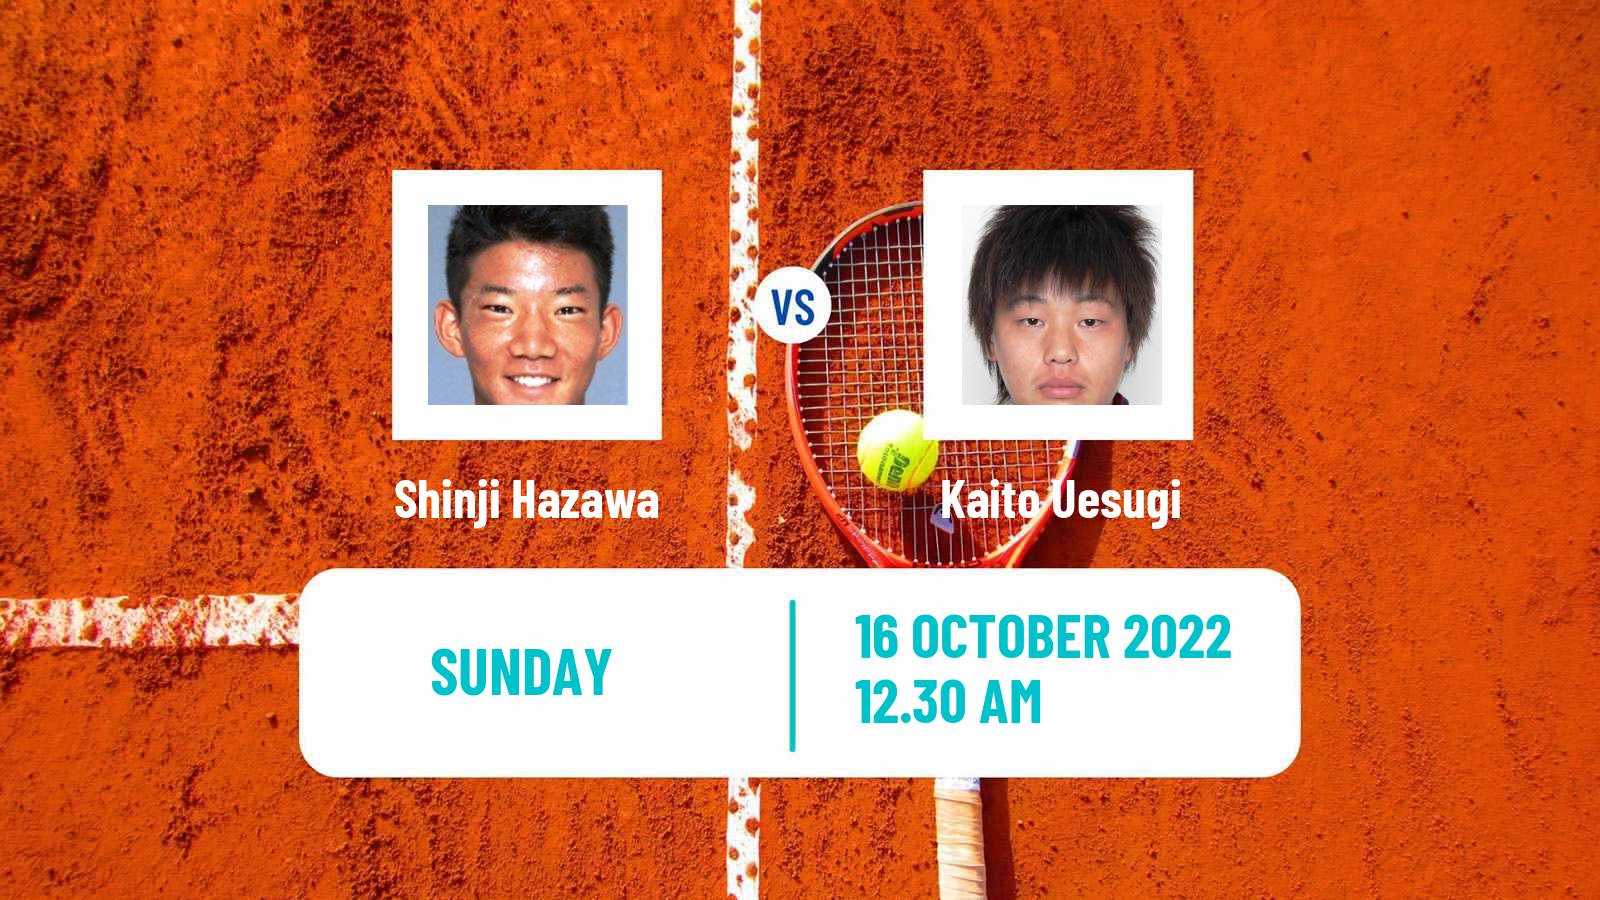 Tennis ATP Challenger Shinji Hazawa - Kaito Uesugi